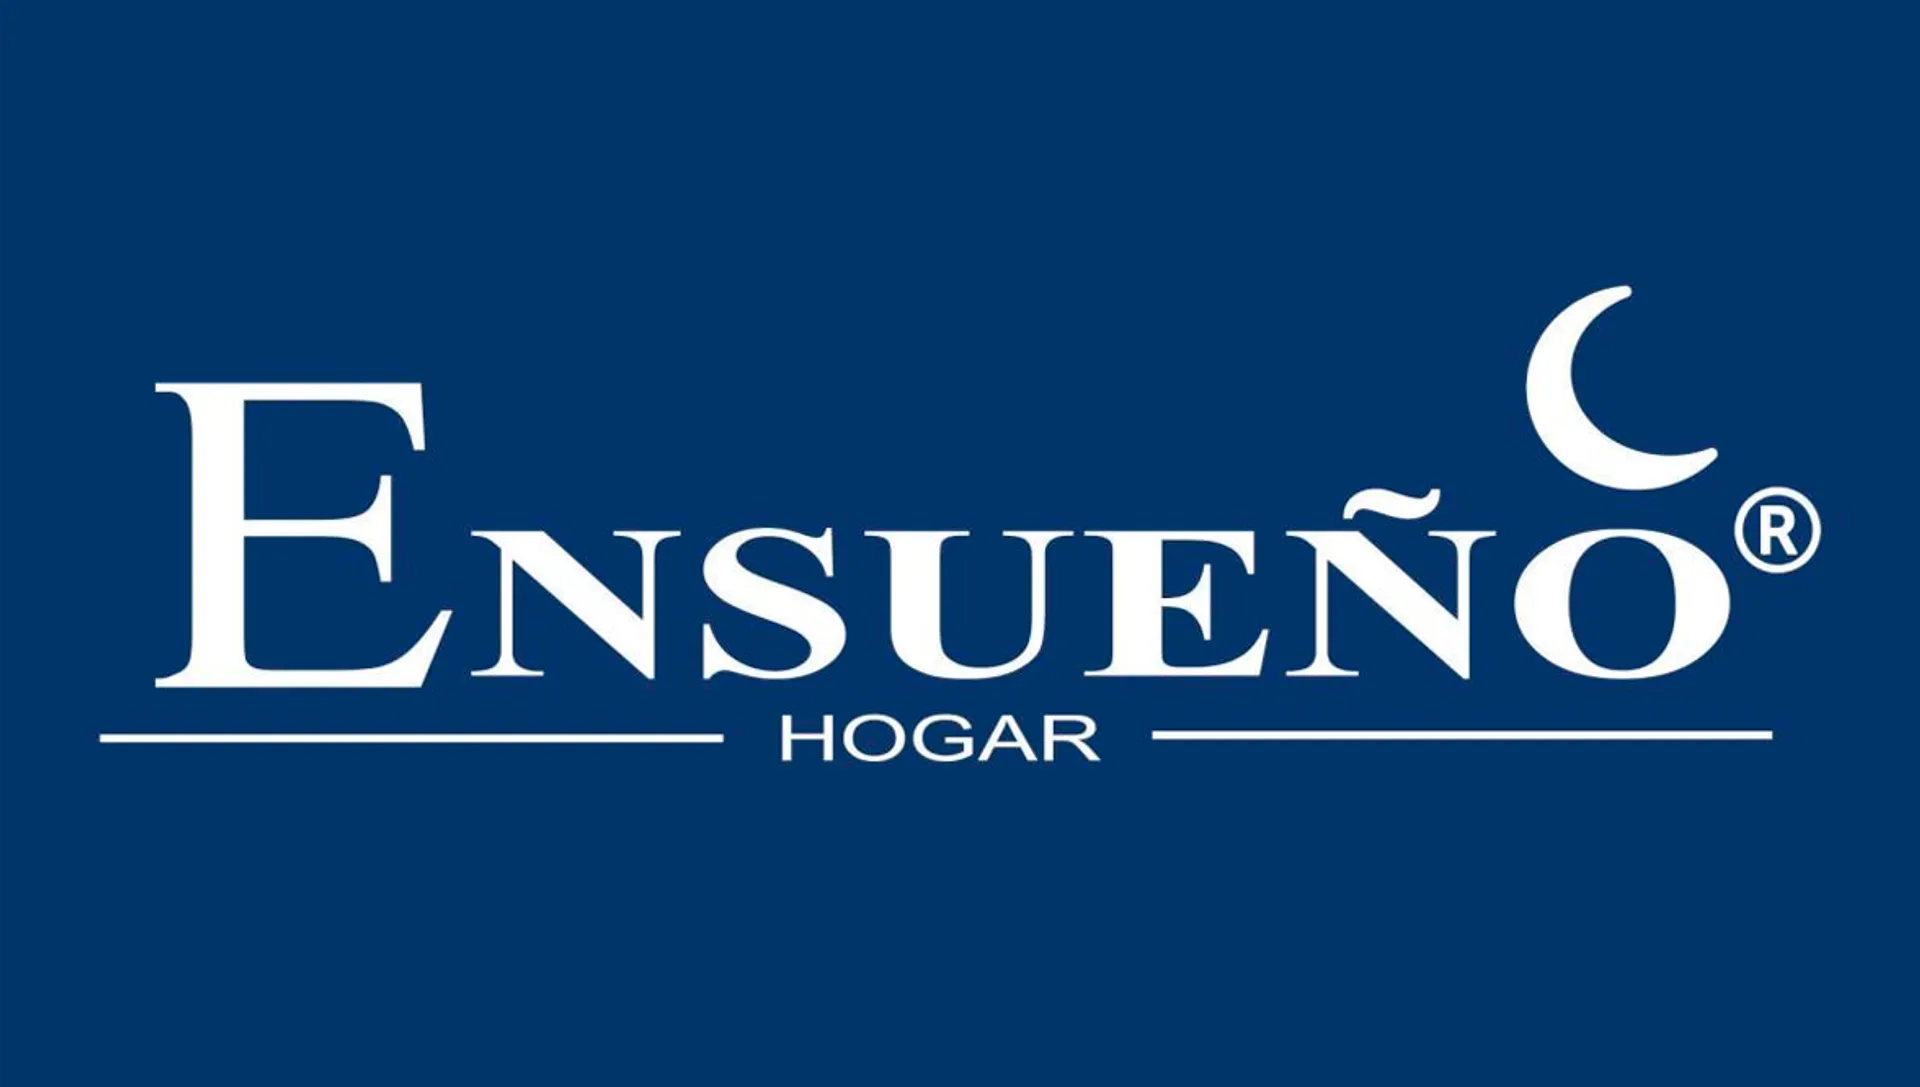 ENSUEÑO HOGAR logo de catálogo